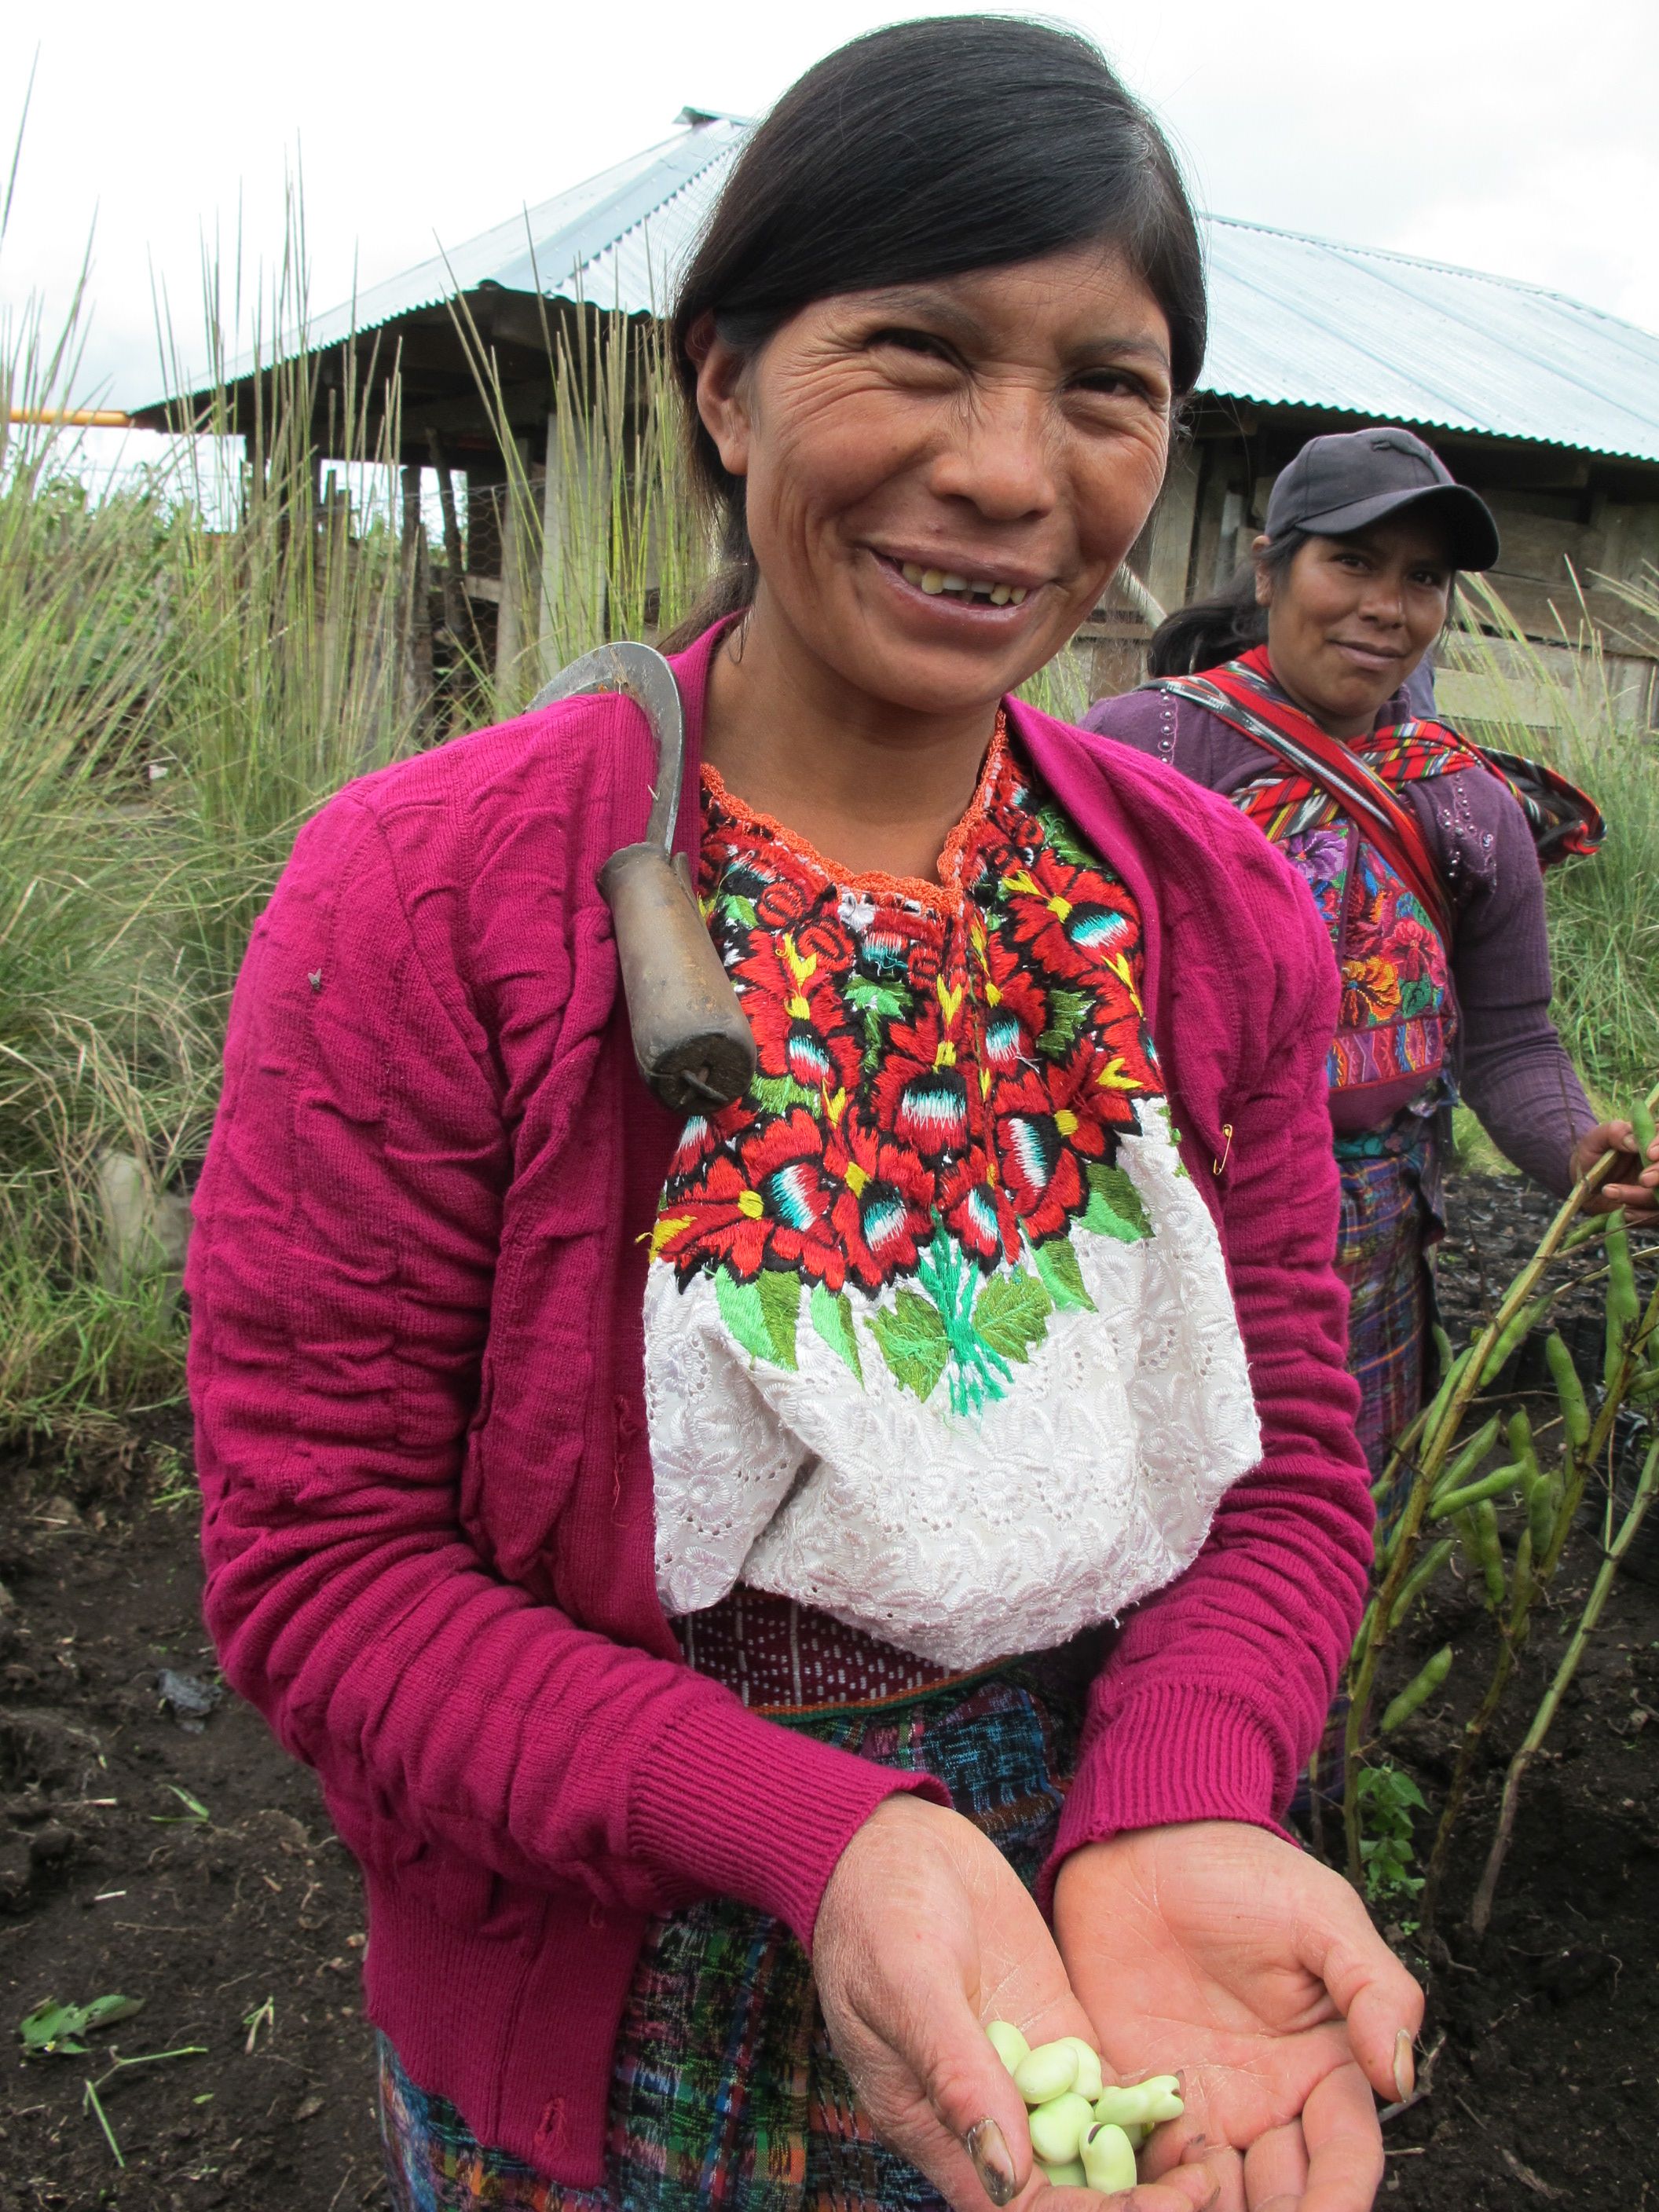 Kleinbauern in Guatamala. Unterstützen Sie Saatgutmärkte und Agroökologische Landwirtschaft.